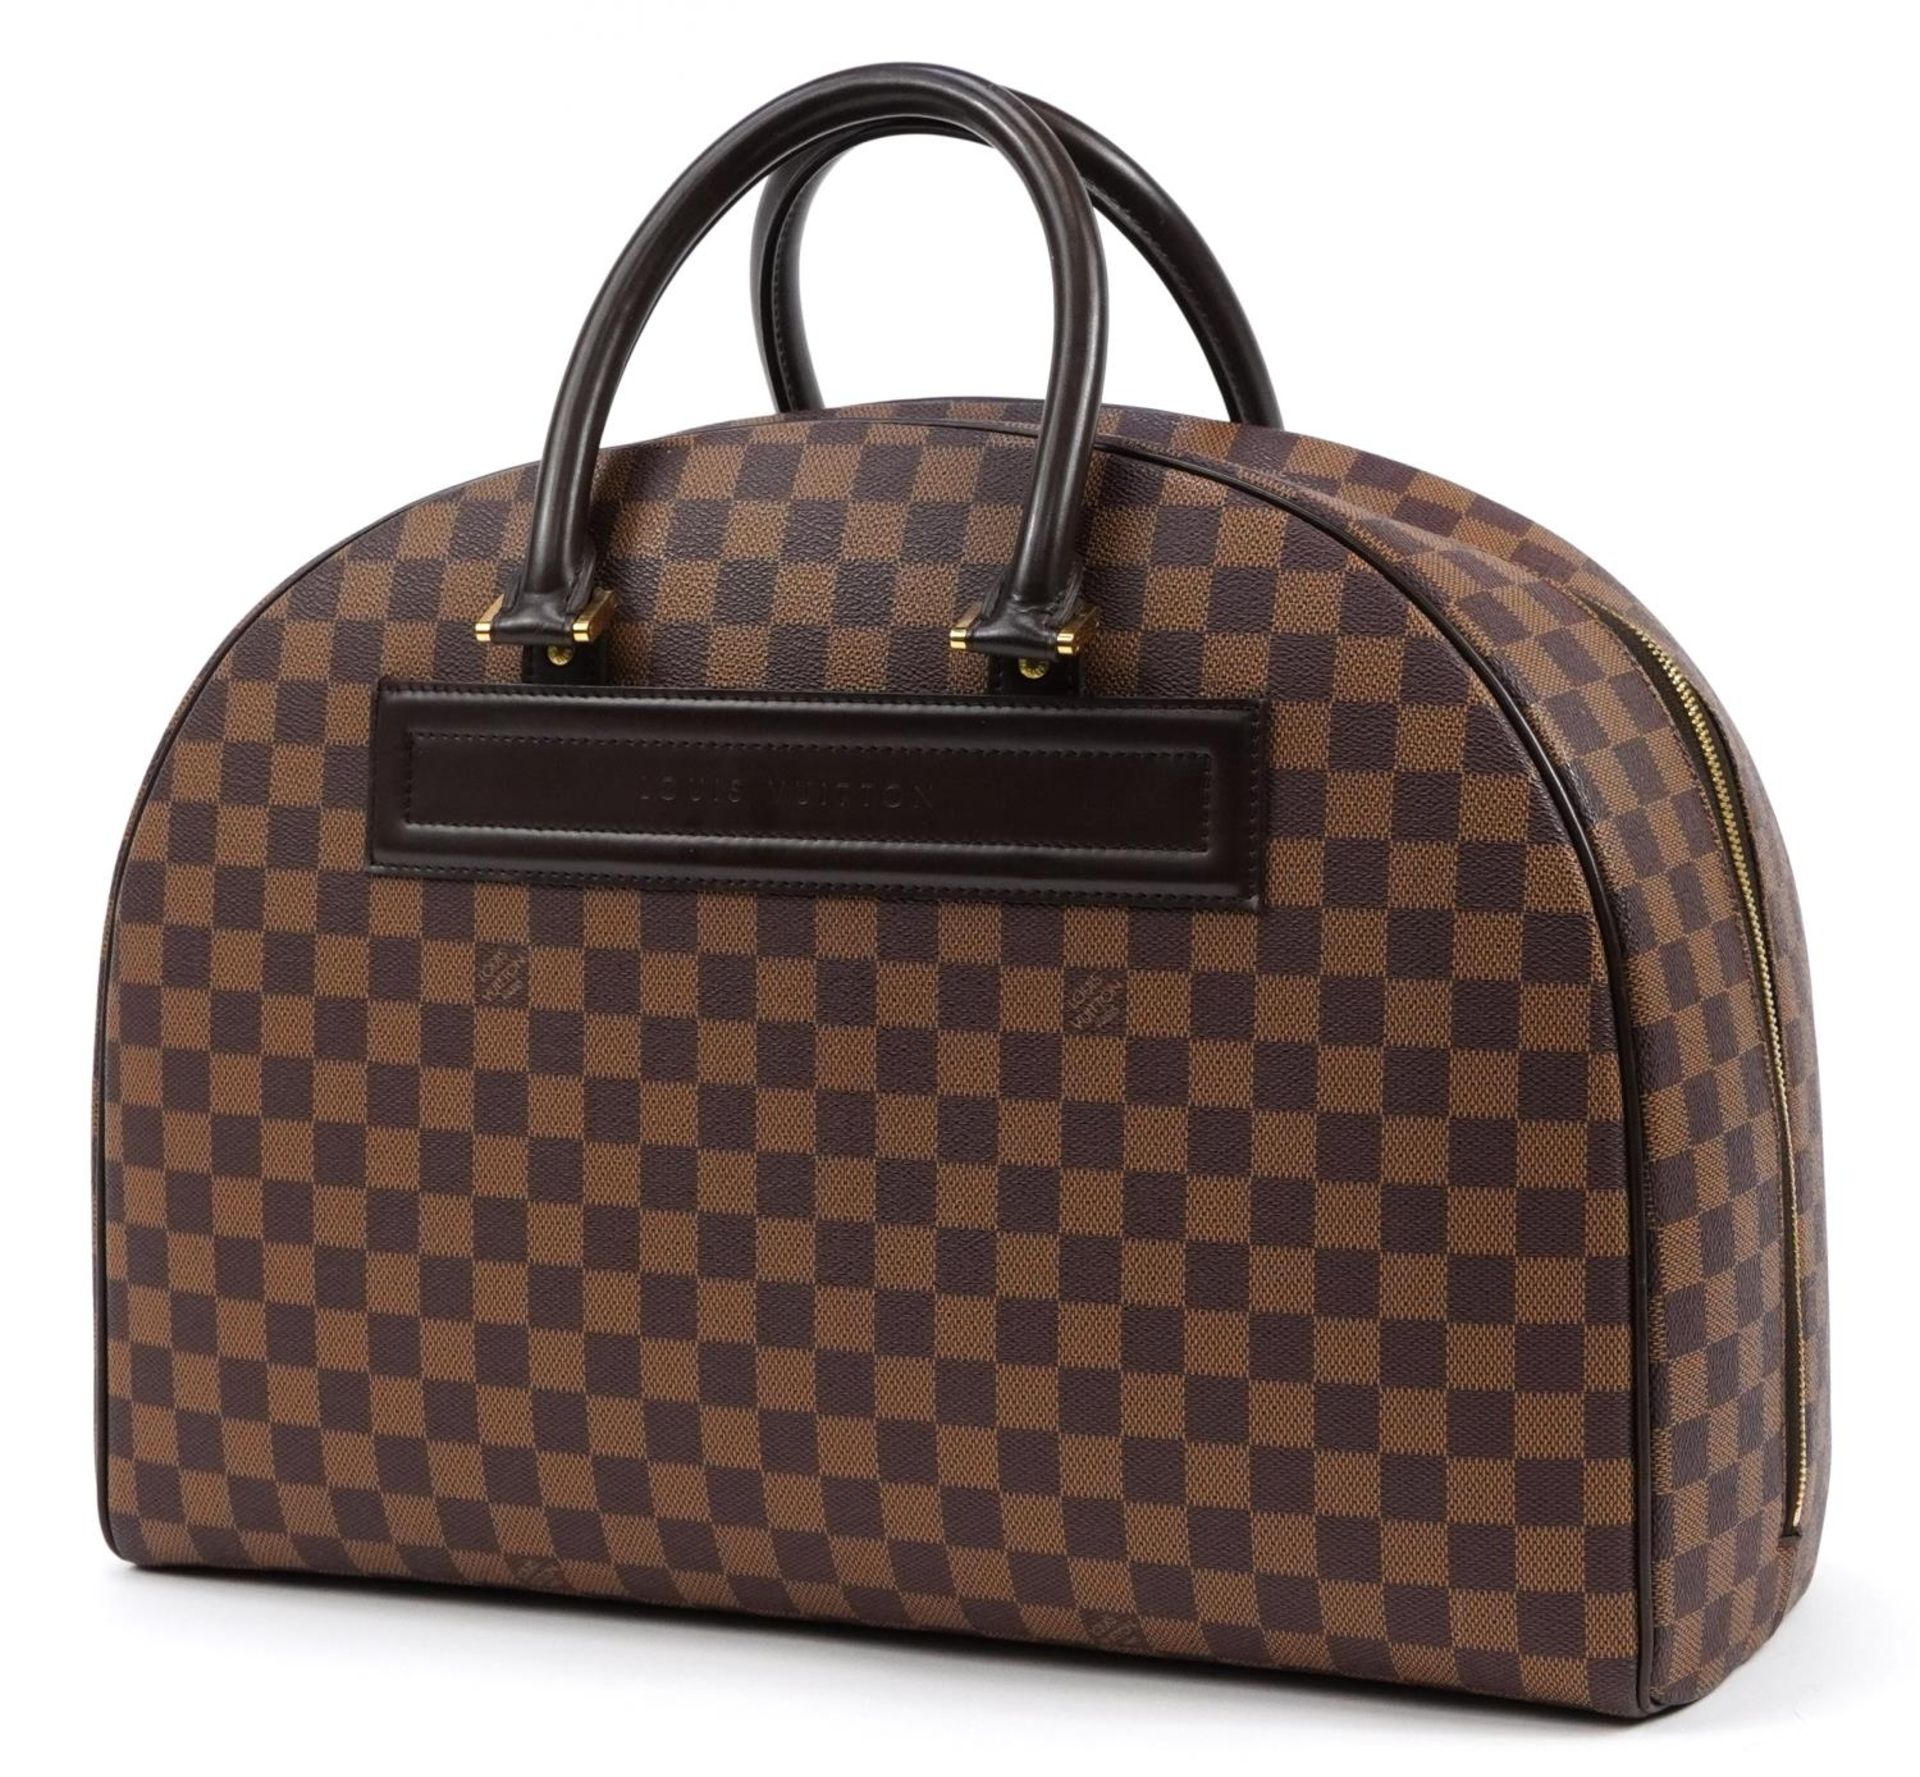 Louis Vuitton Damier Ebene Nolita satchel bag with two canvas straps, date code SP0939, 32cm x 44. - Image 2 of 7